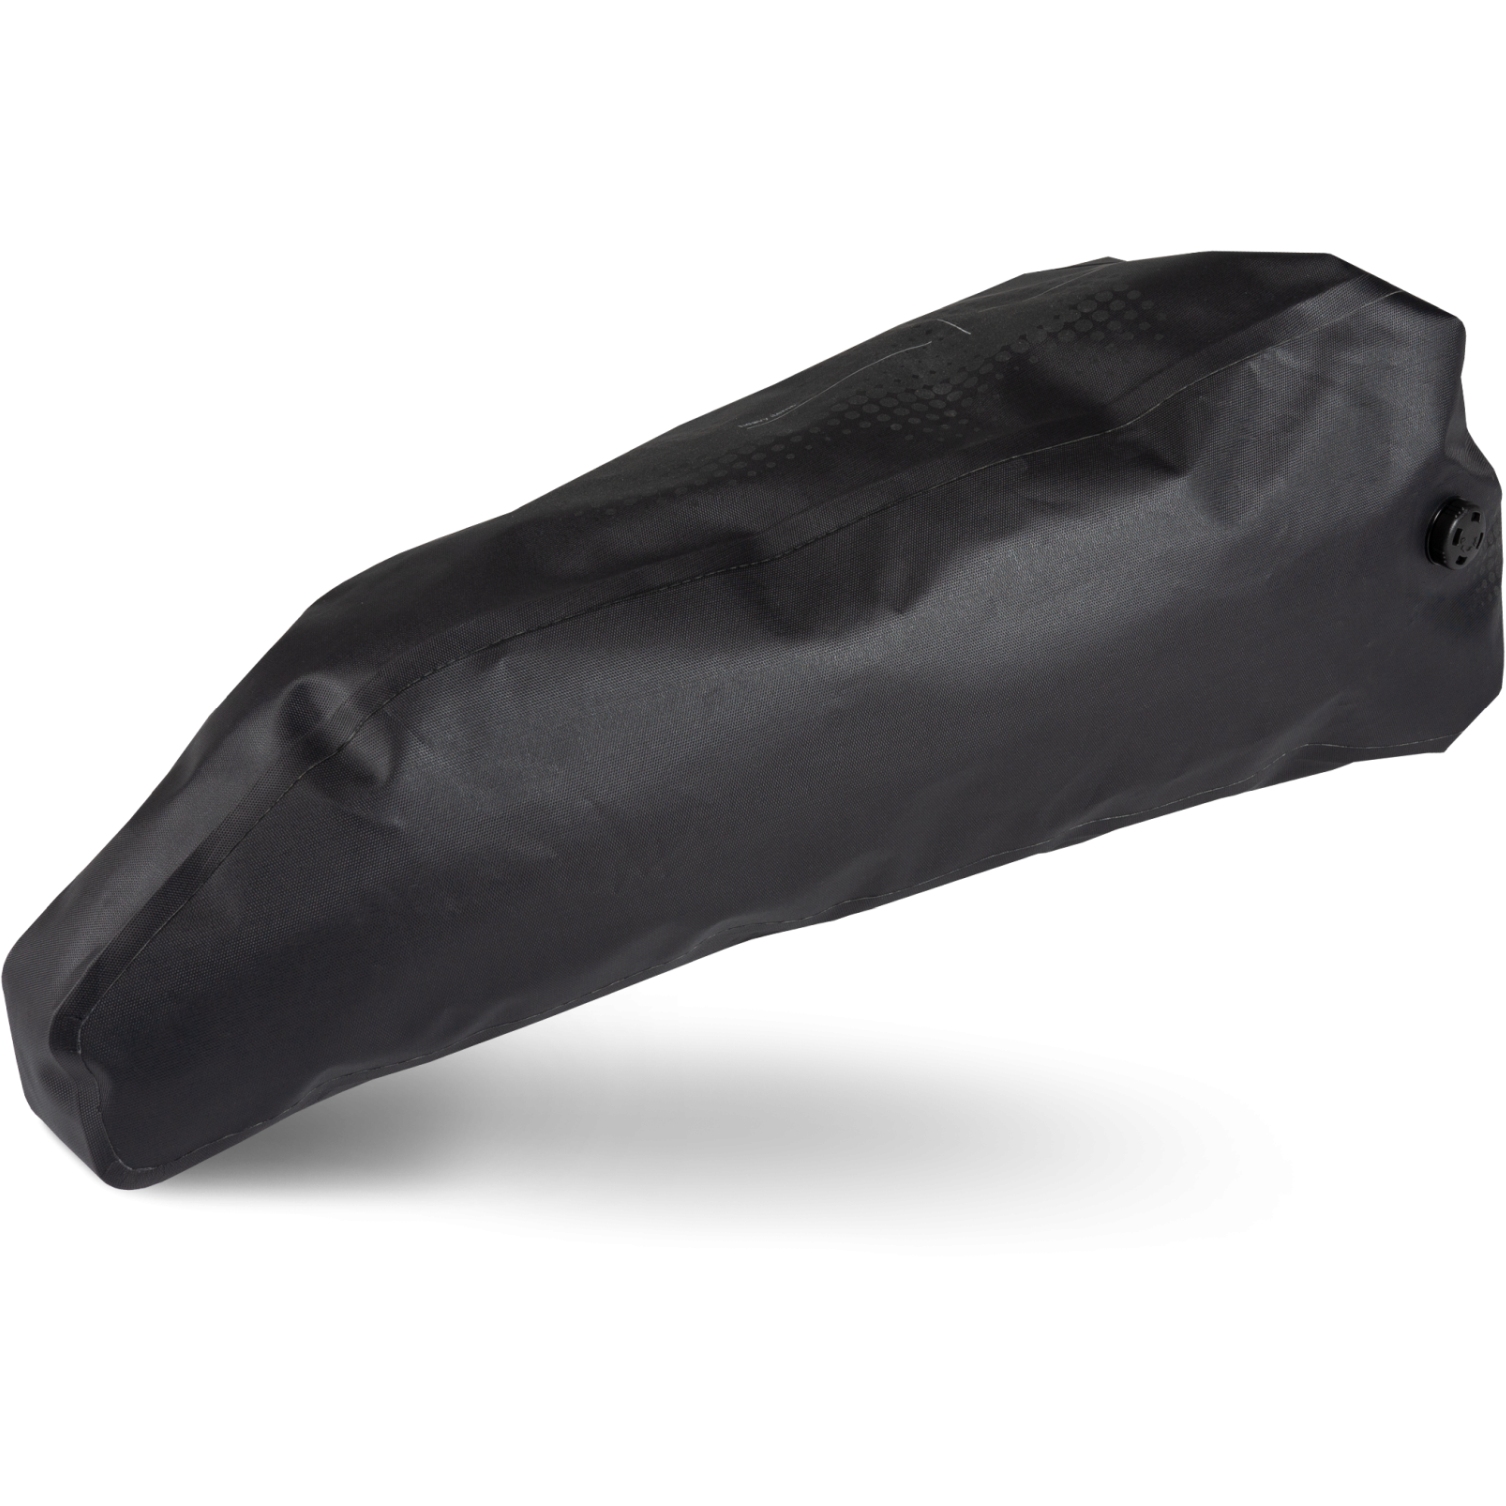 Productfoto van CUBE Dry Bag voor Zadeltas - ACID PACK PRO 15L - zwart